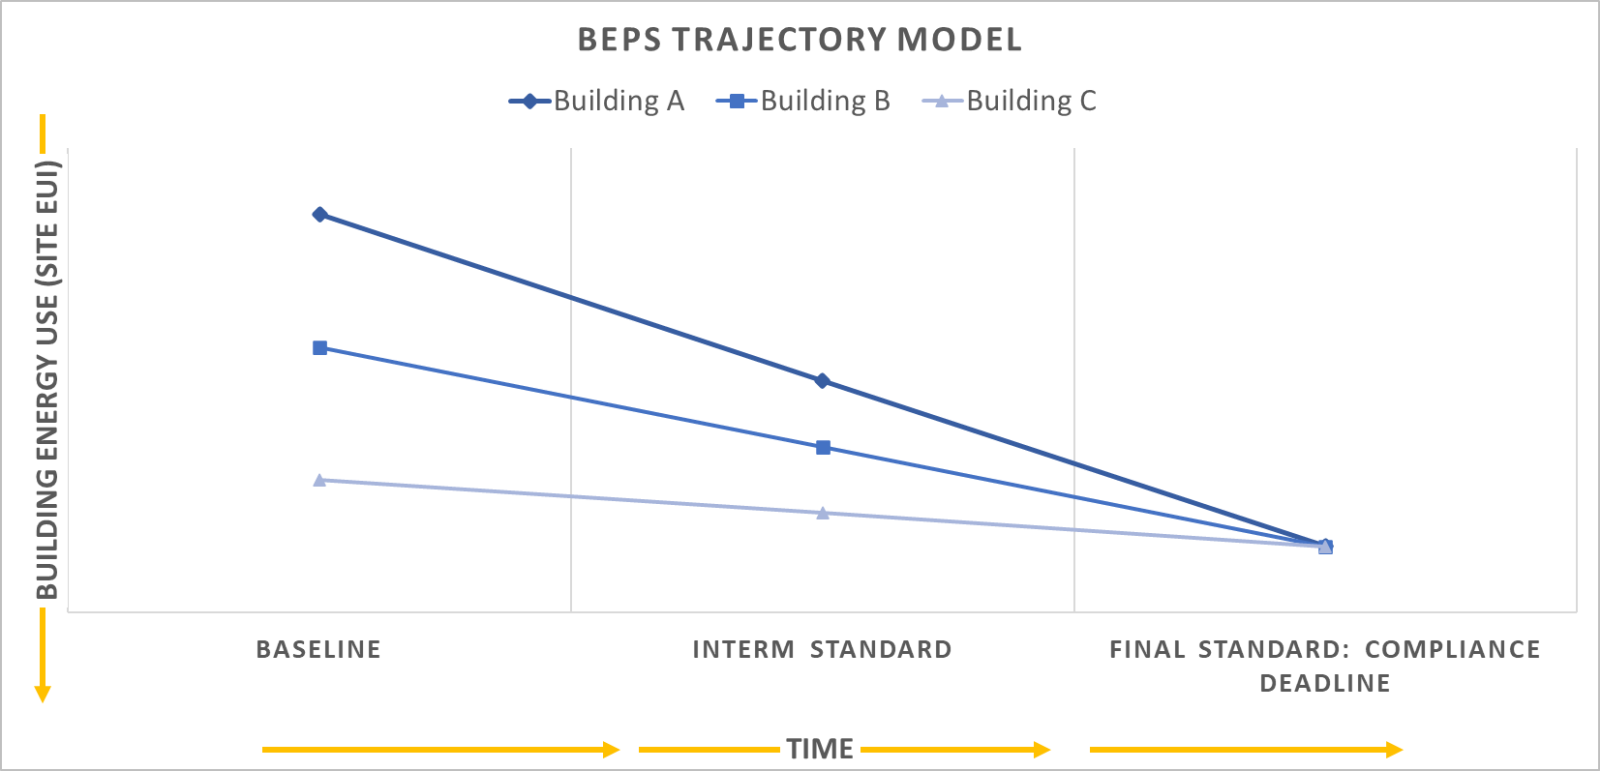 BEPS Trajectory Model